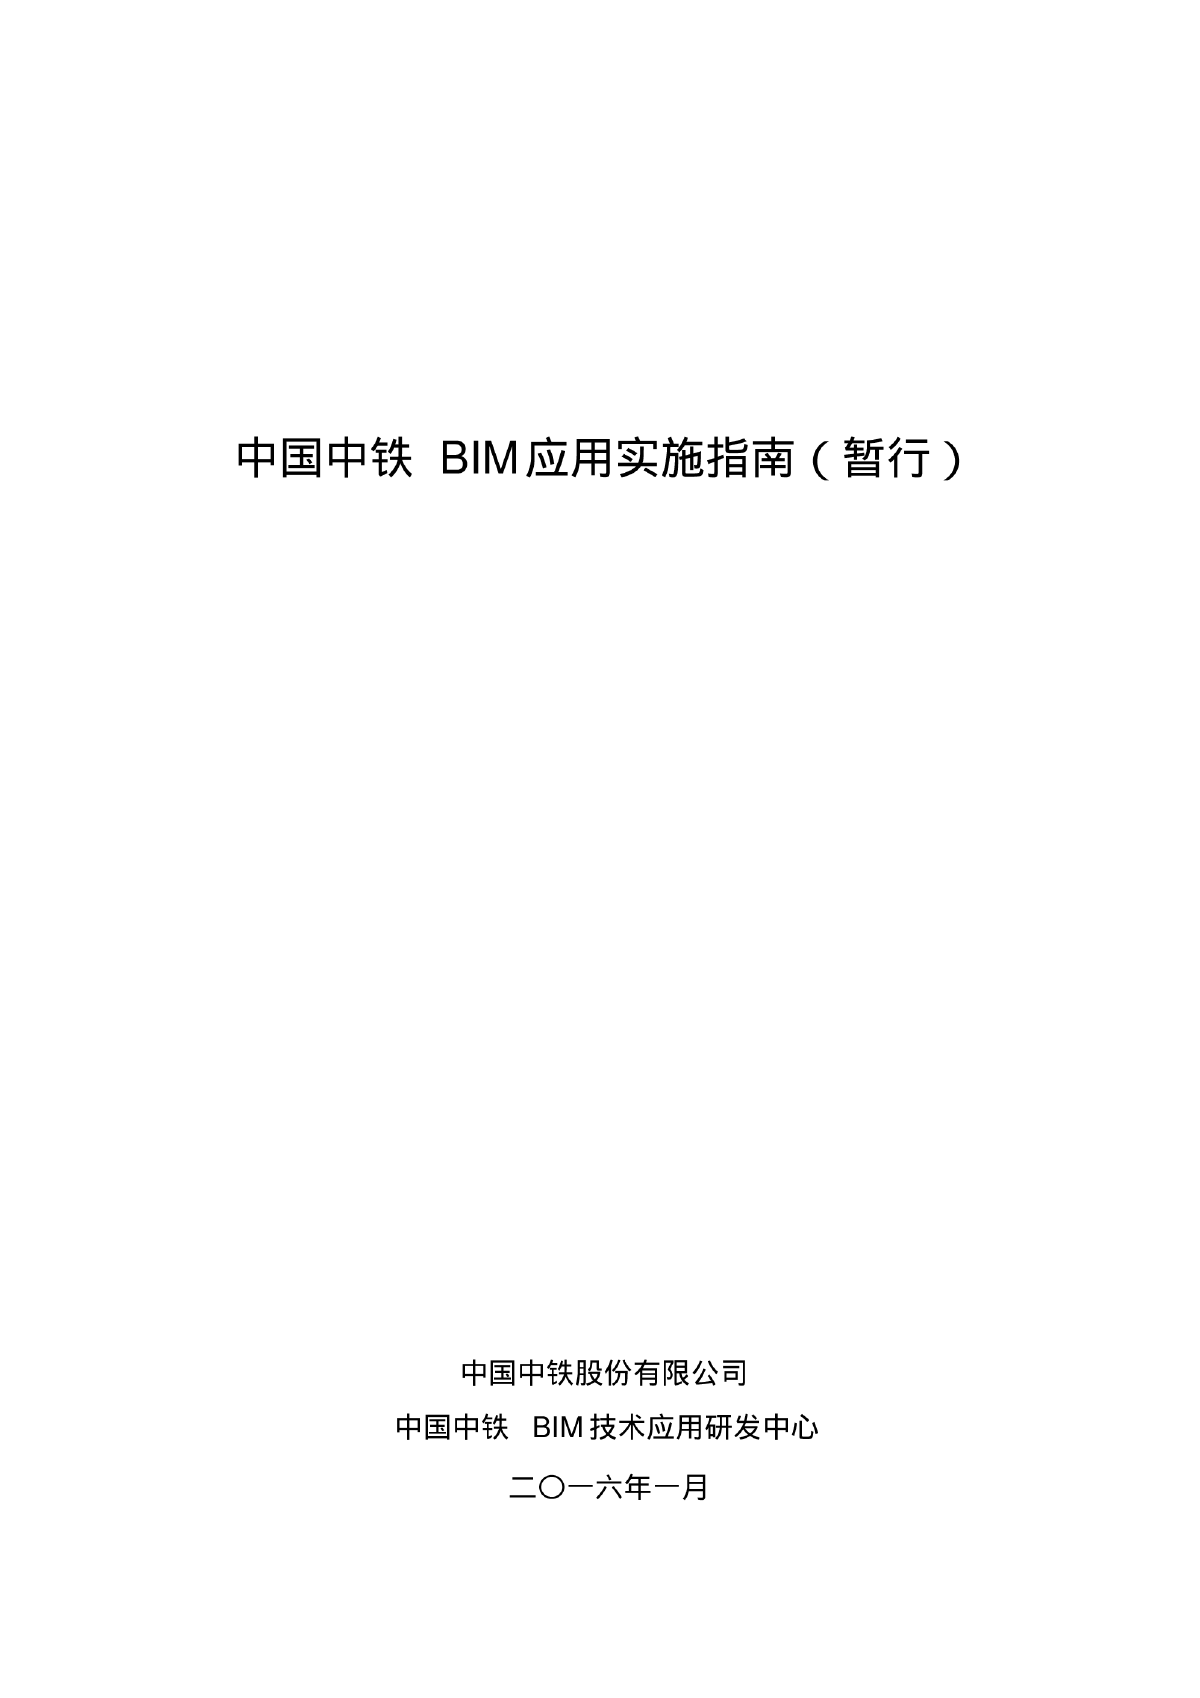 中国中铁BIM应用实施指南暂行PDF-图一